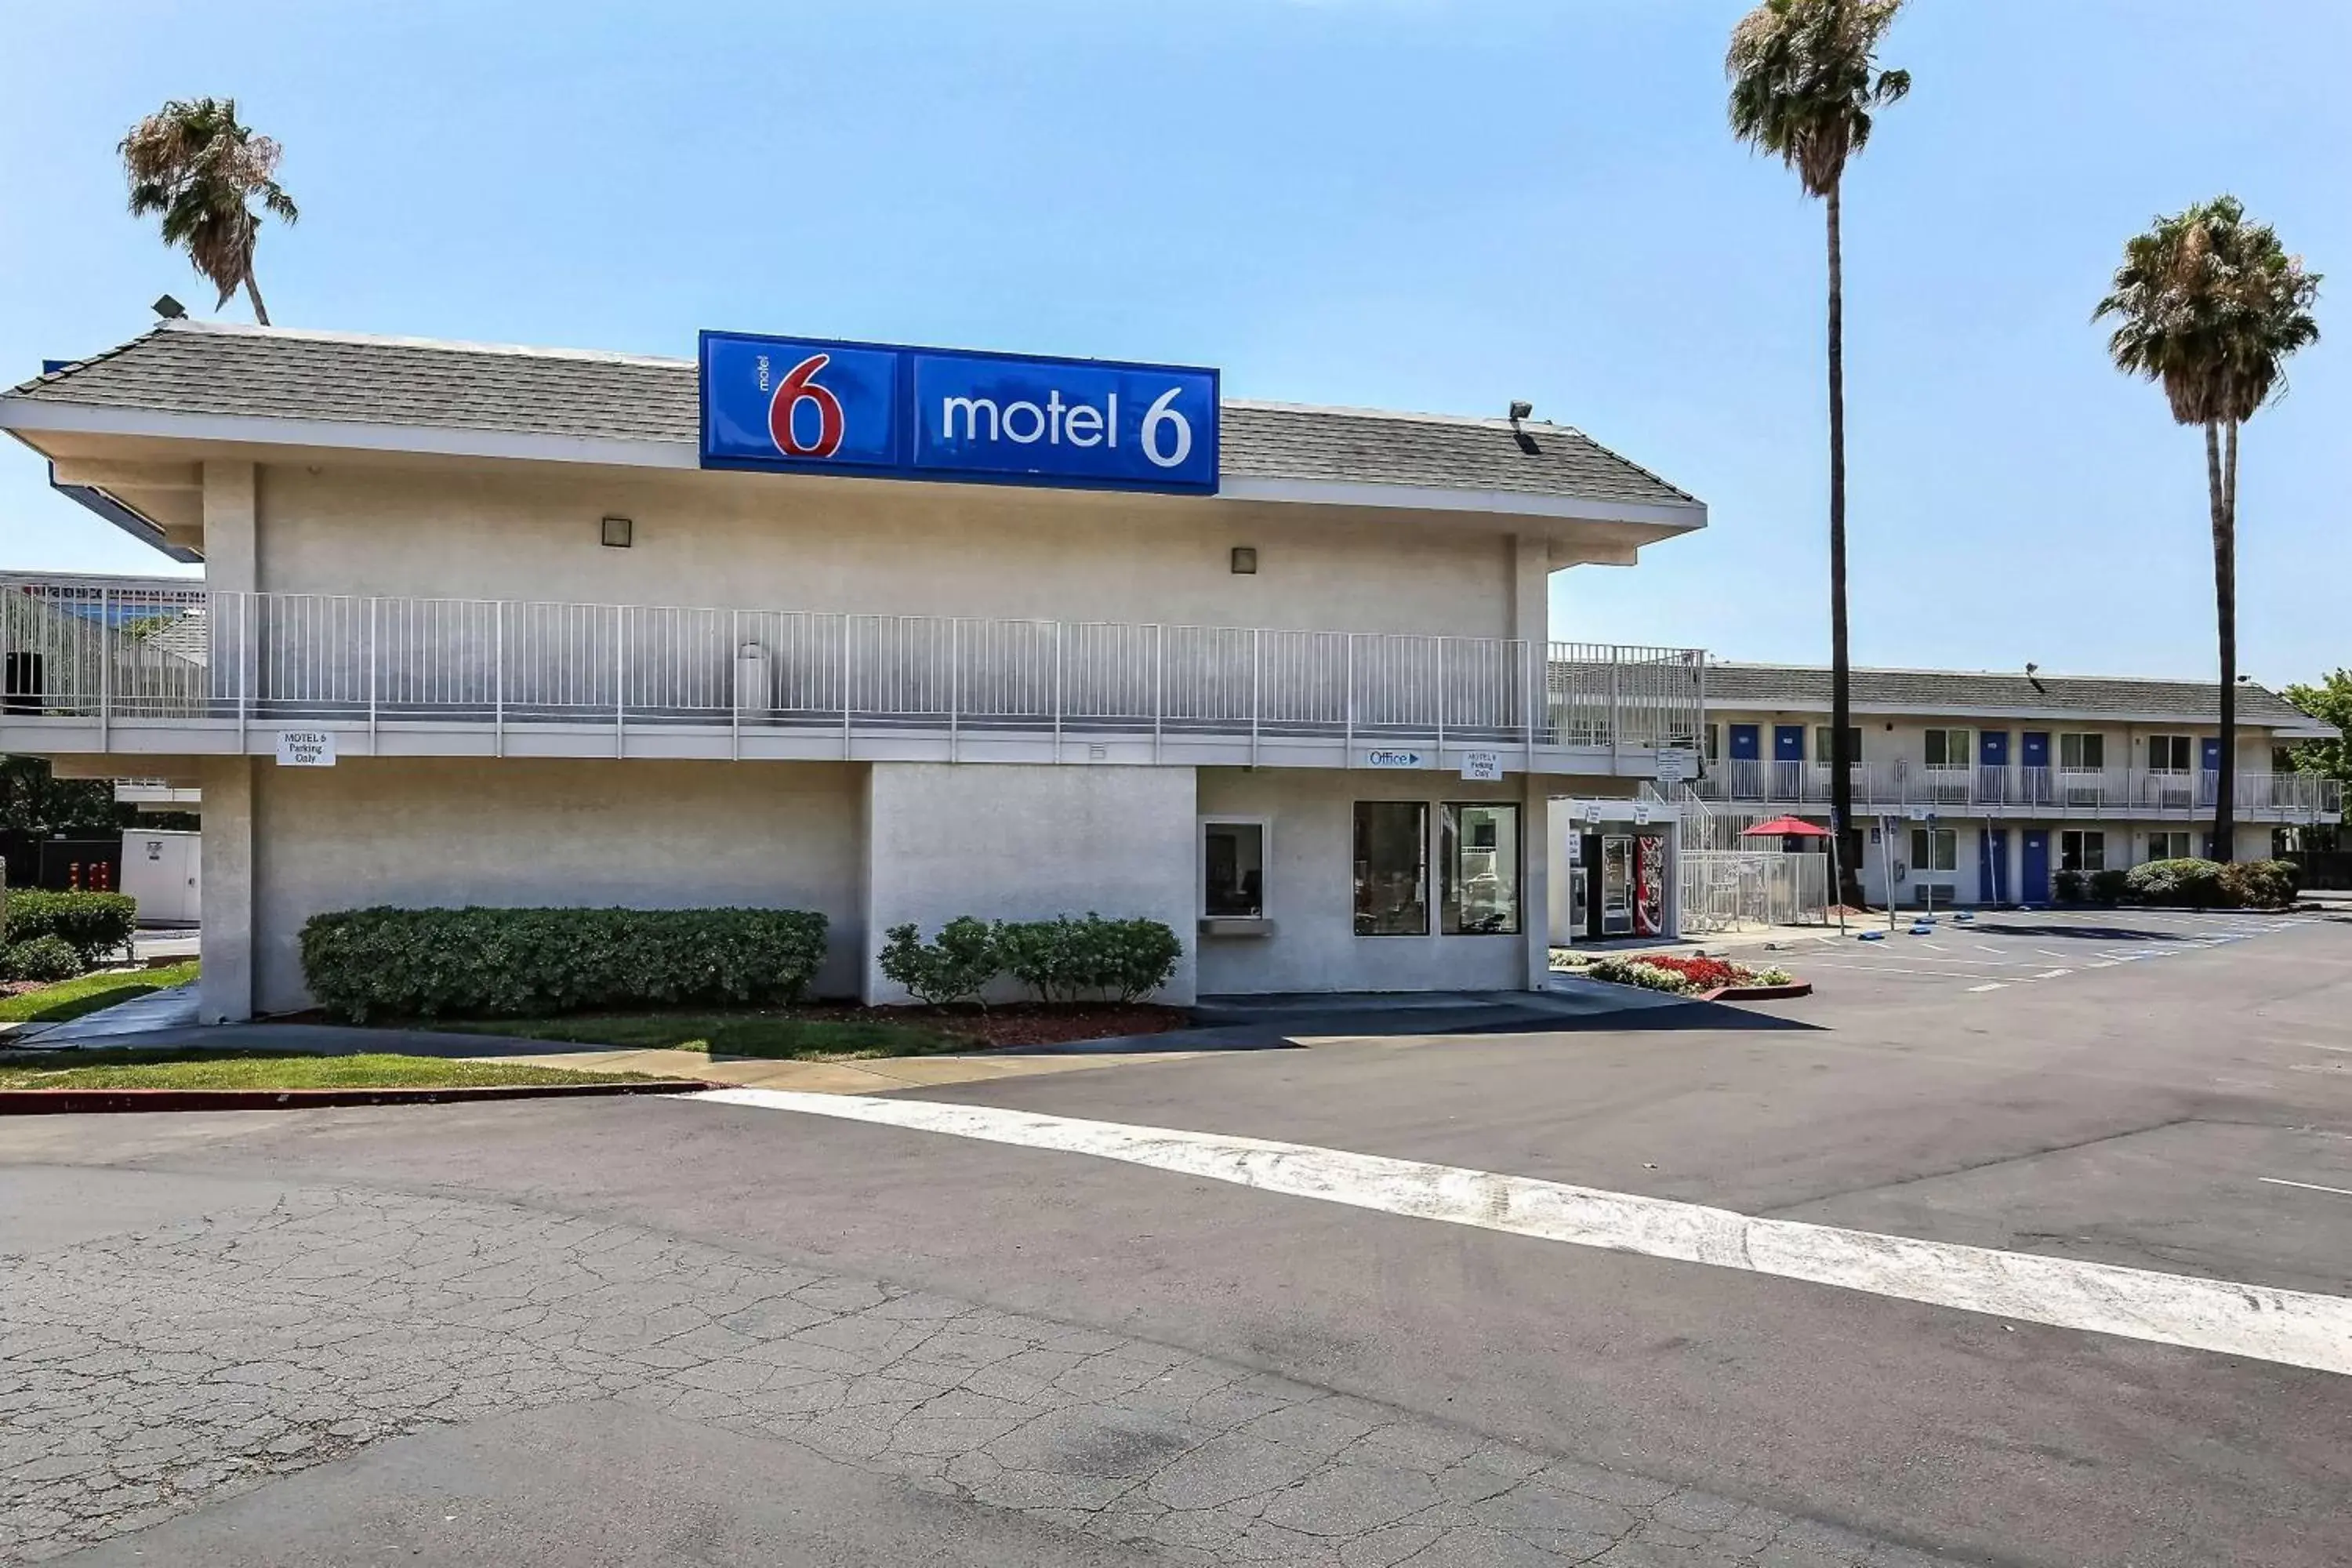 Property building, Facade/Entrance in Motel 6-Pleasanton, CA